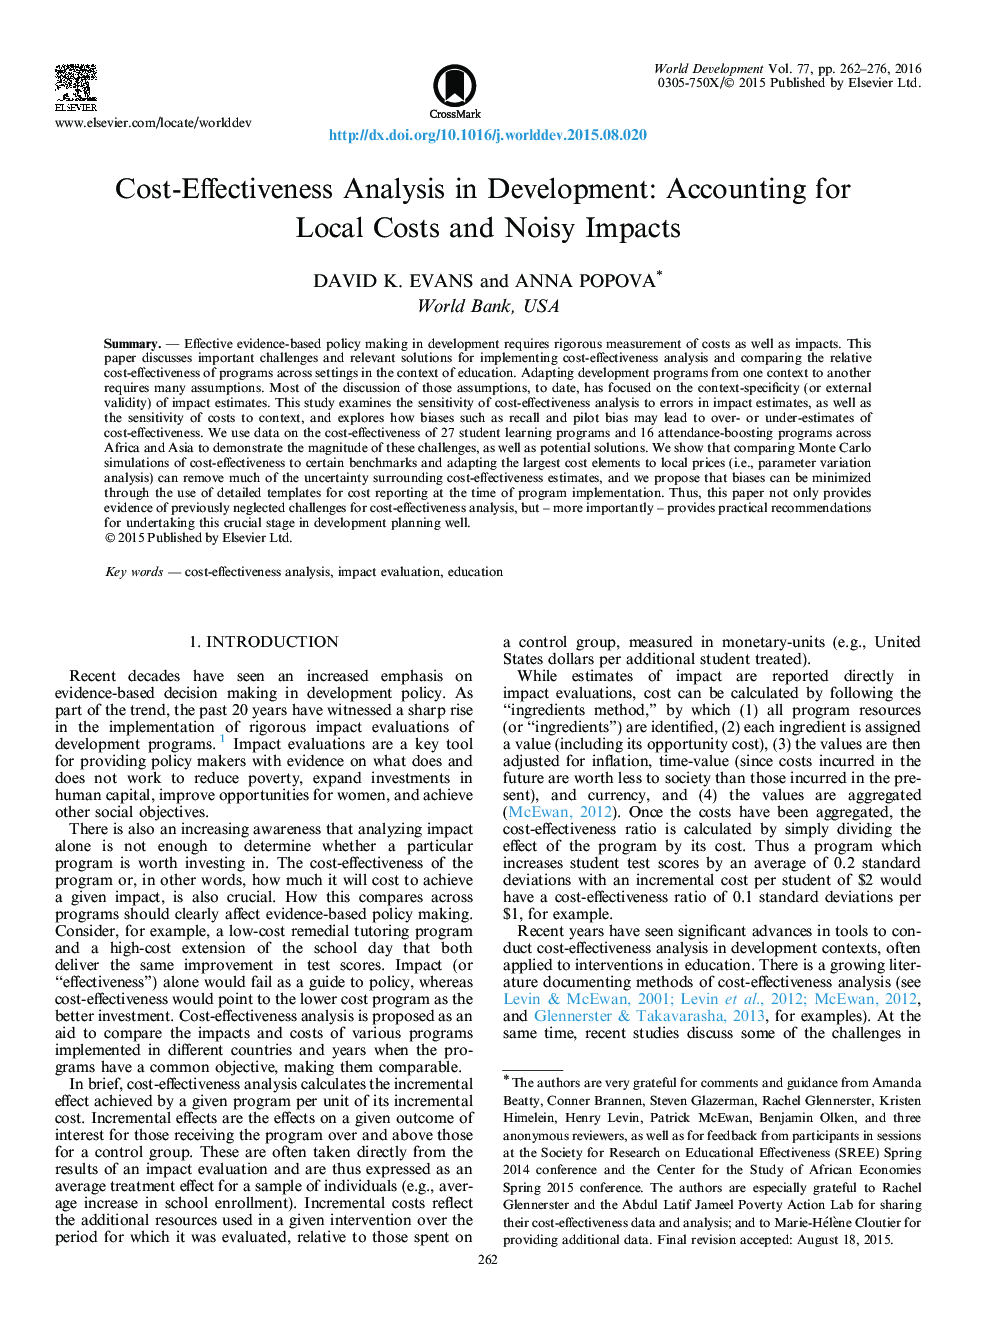 تجزیه و تحلیل هزینه-اثربخشی در توسعه: حسابداری برای هزینه های محلی و اثرات سر و صدا 